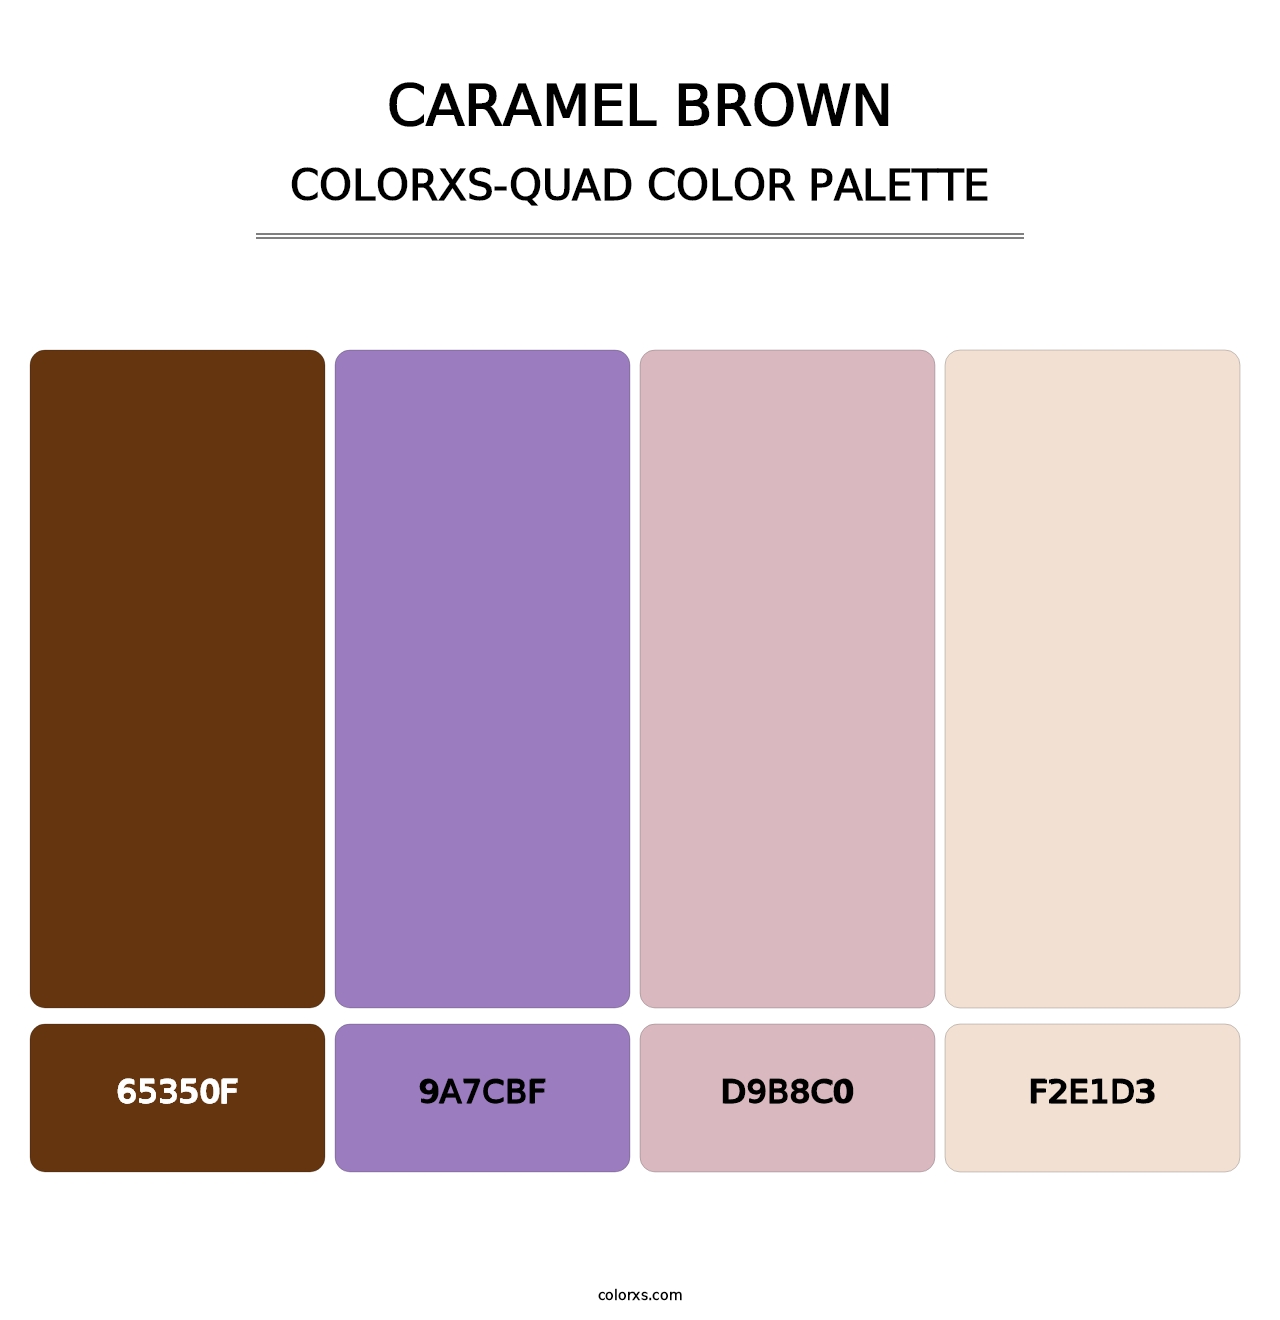 Caramel Brown - Colorxs Quad Palette